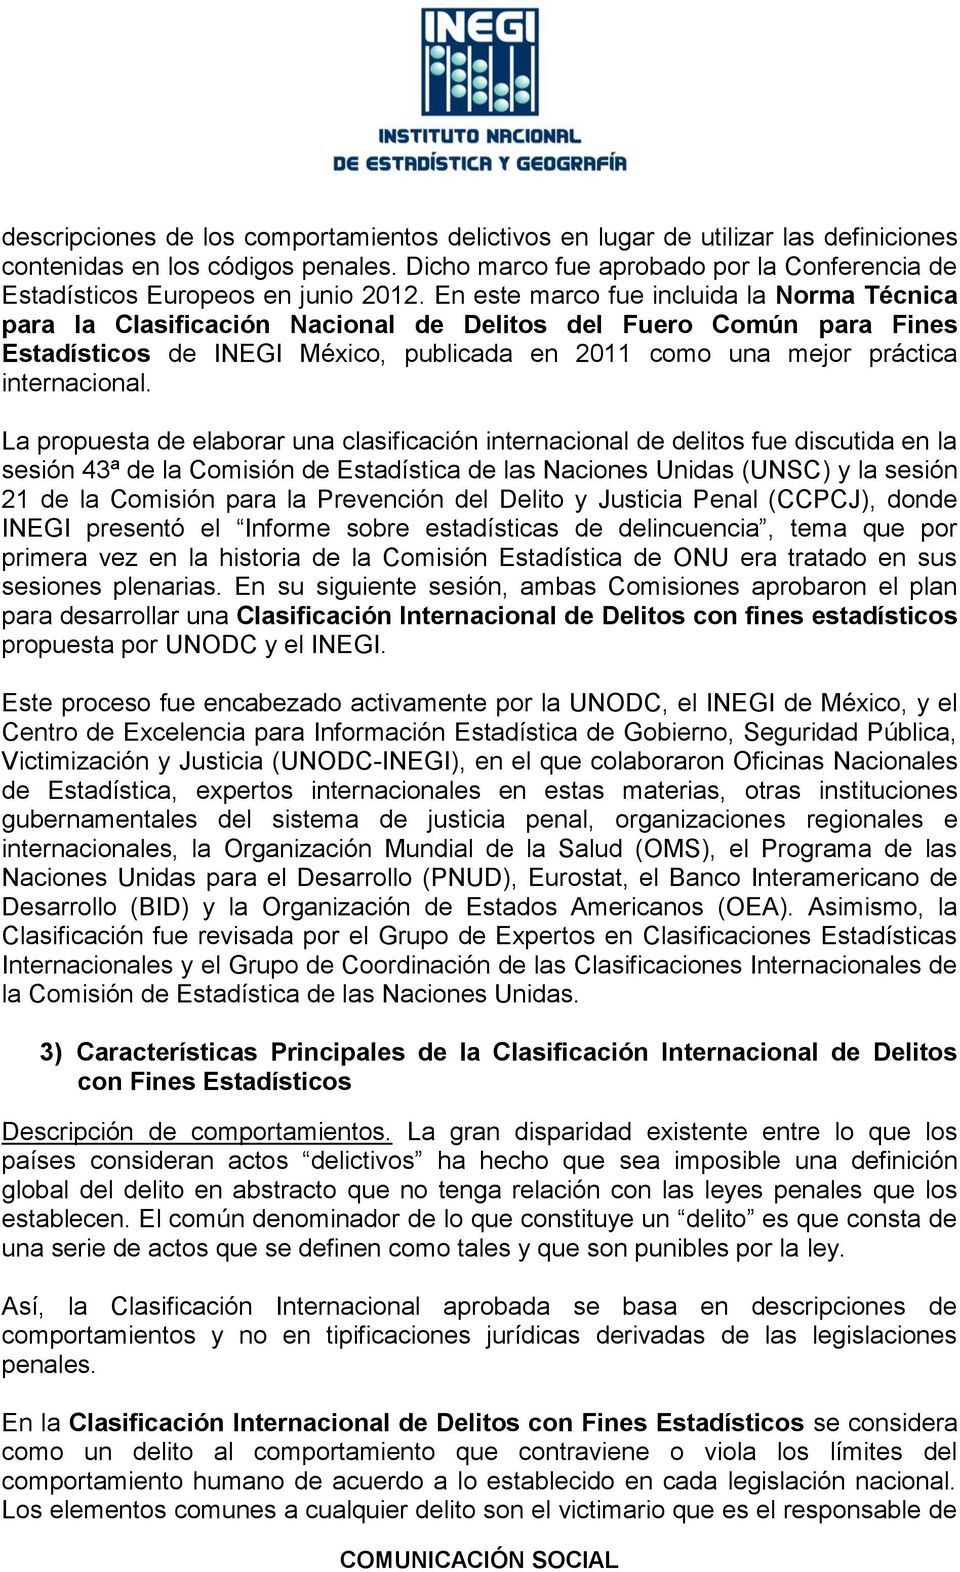 En este marco fue incluida la Norma Técnica para la Clasificación Nacional de Delitos del Fuero Común para Fines Estadísticos de INEGI México, publicada en 2011 como una mejor práctica internacional.